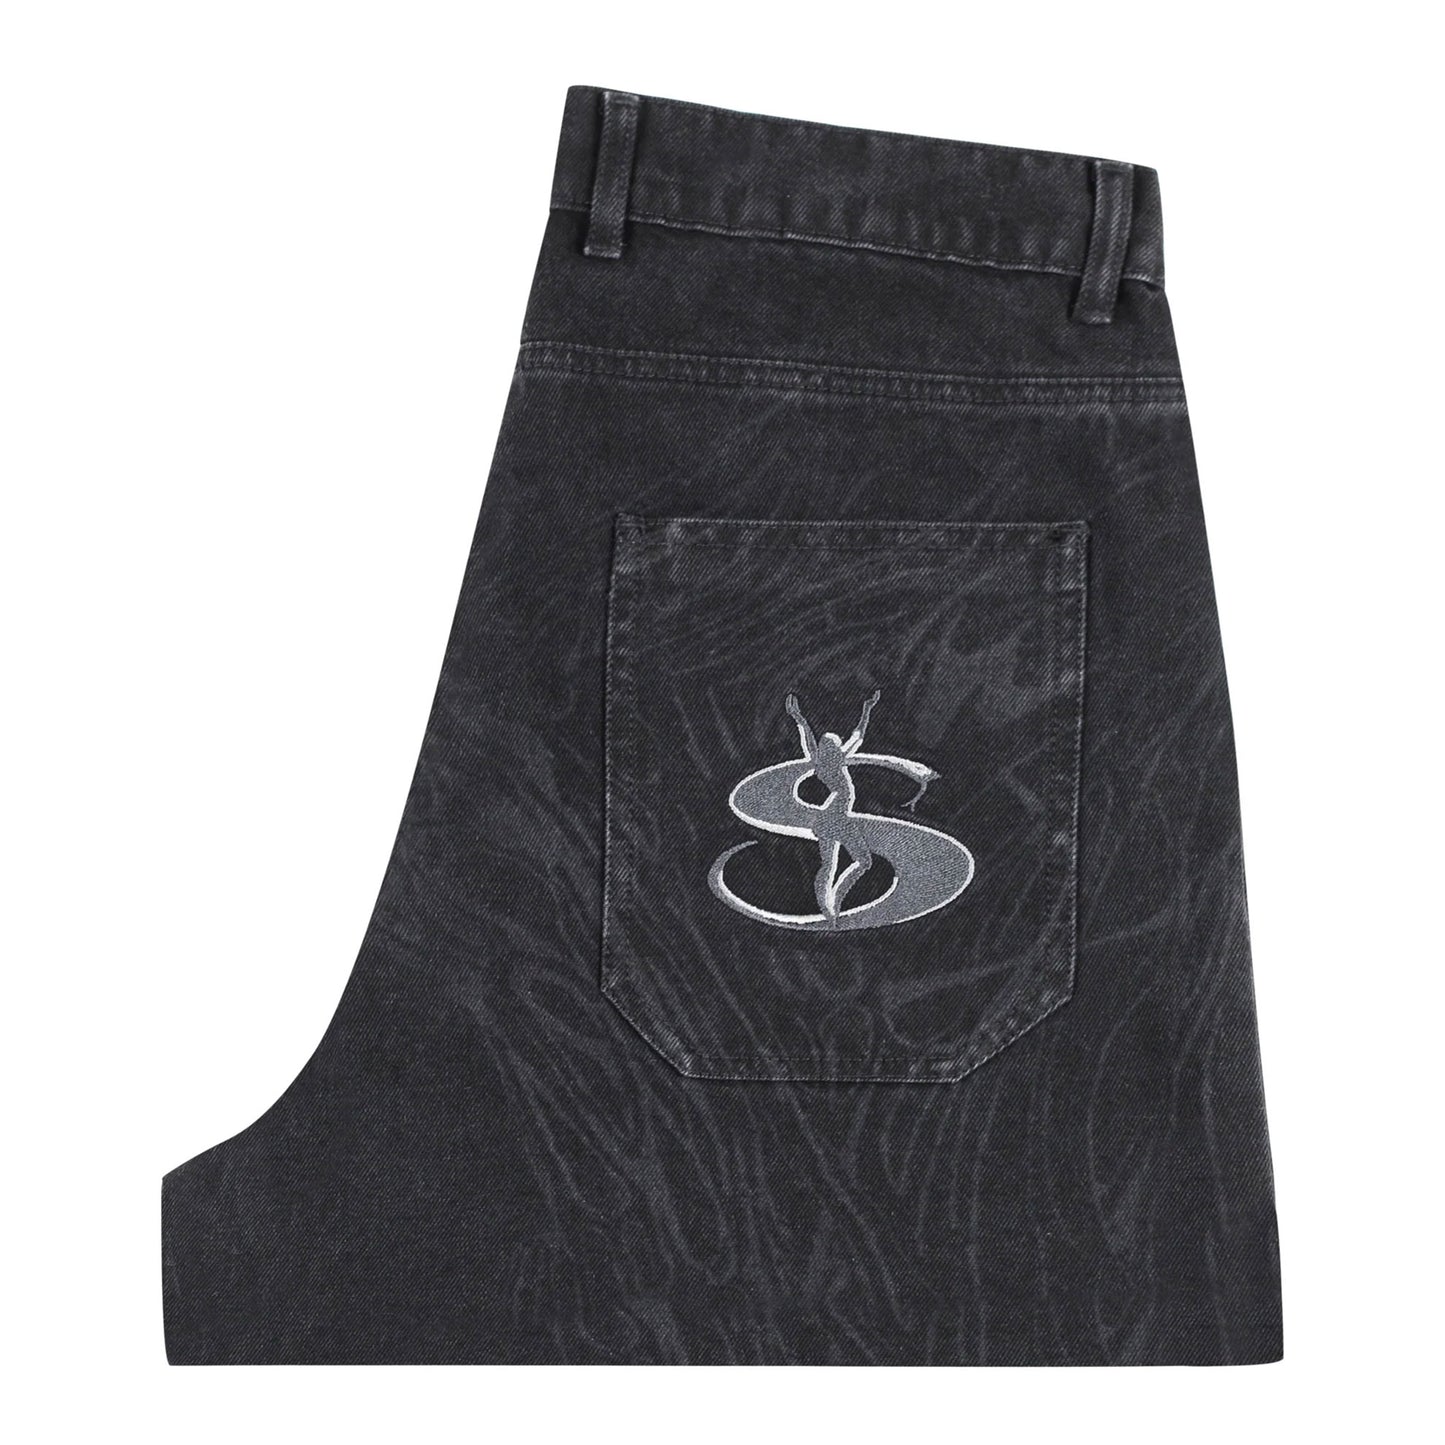 新品 Yardsale Phantasy Jeans デニムパンツ 黒 M86センチです